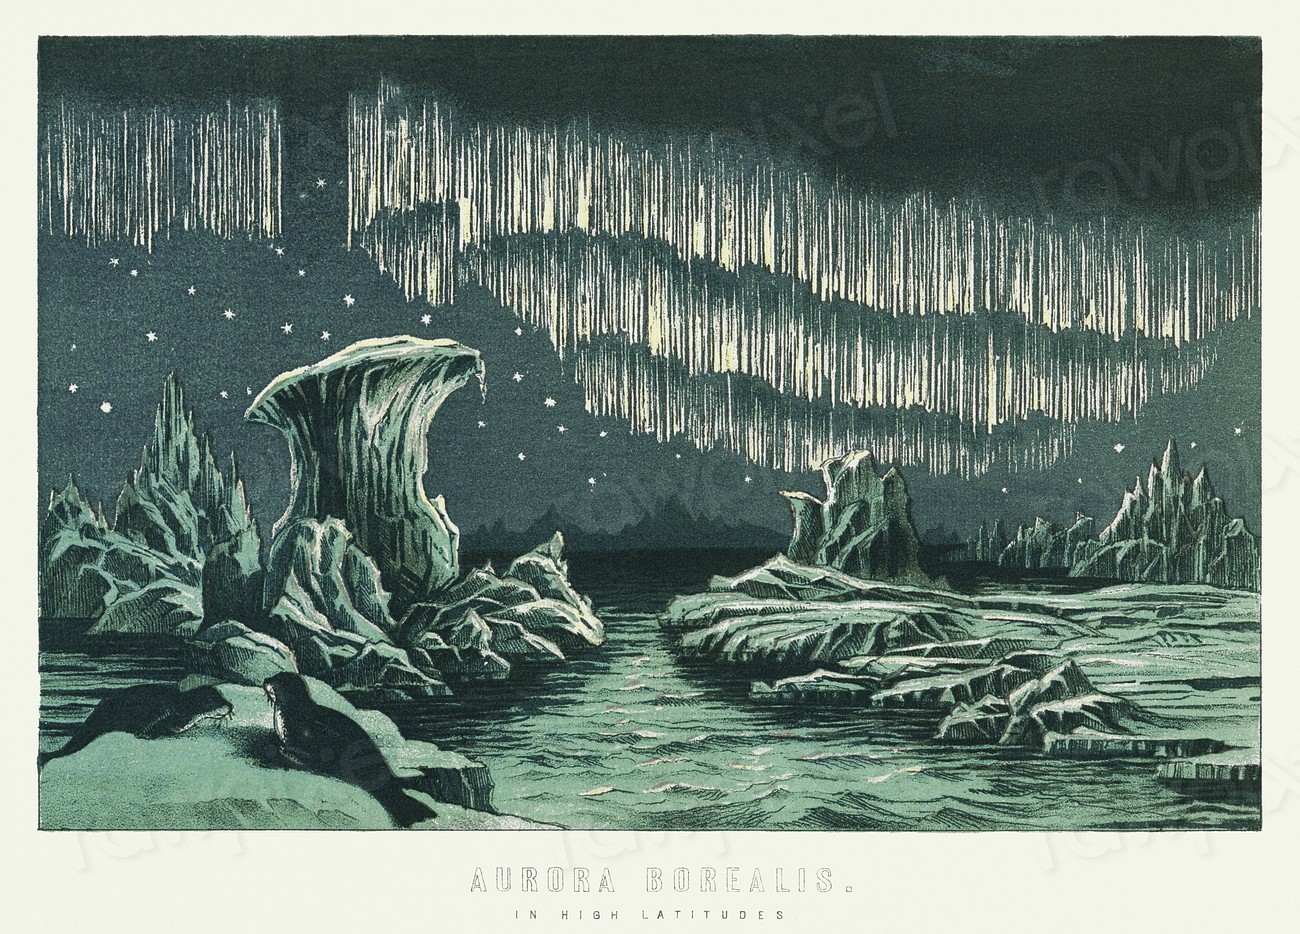 Aurora Borealis in High Latitudes